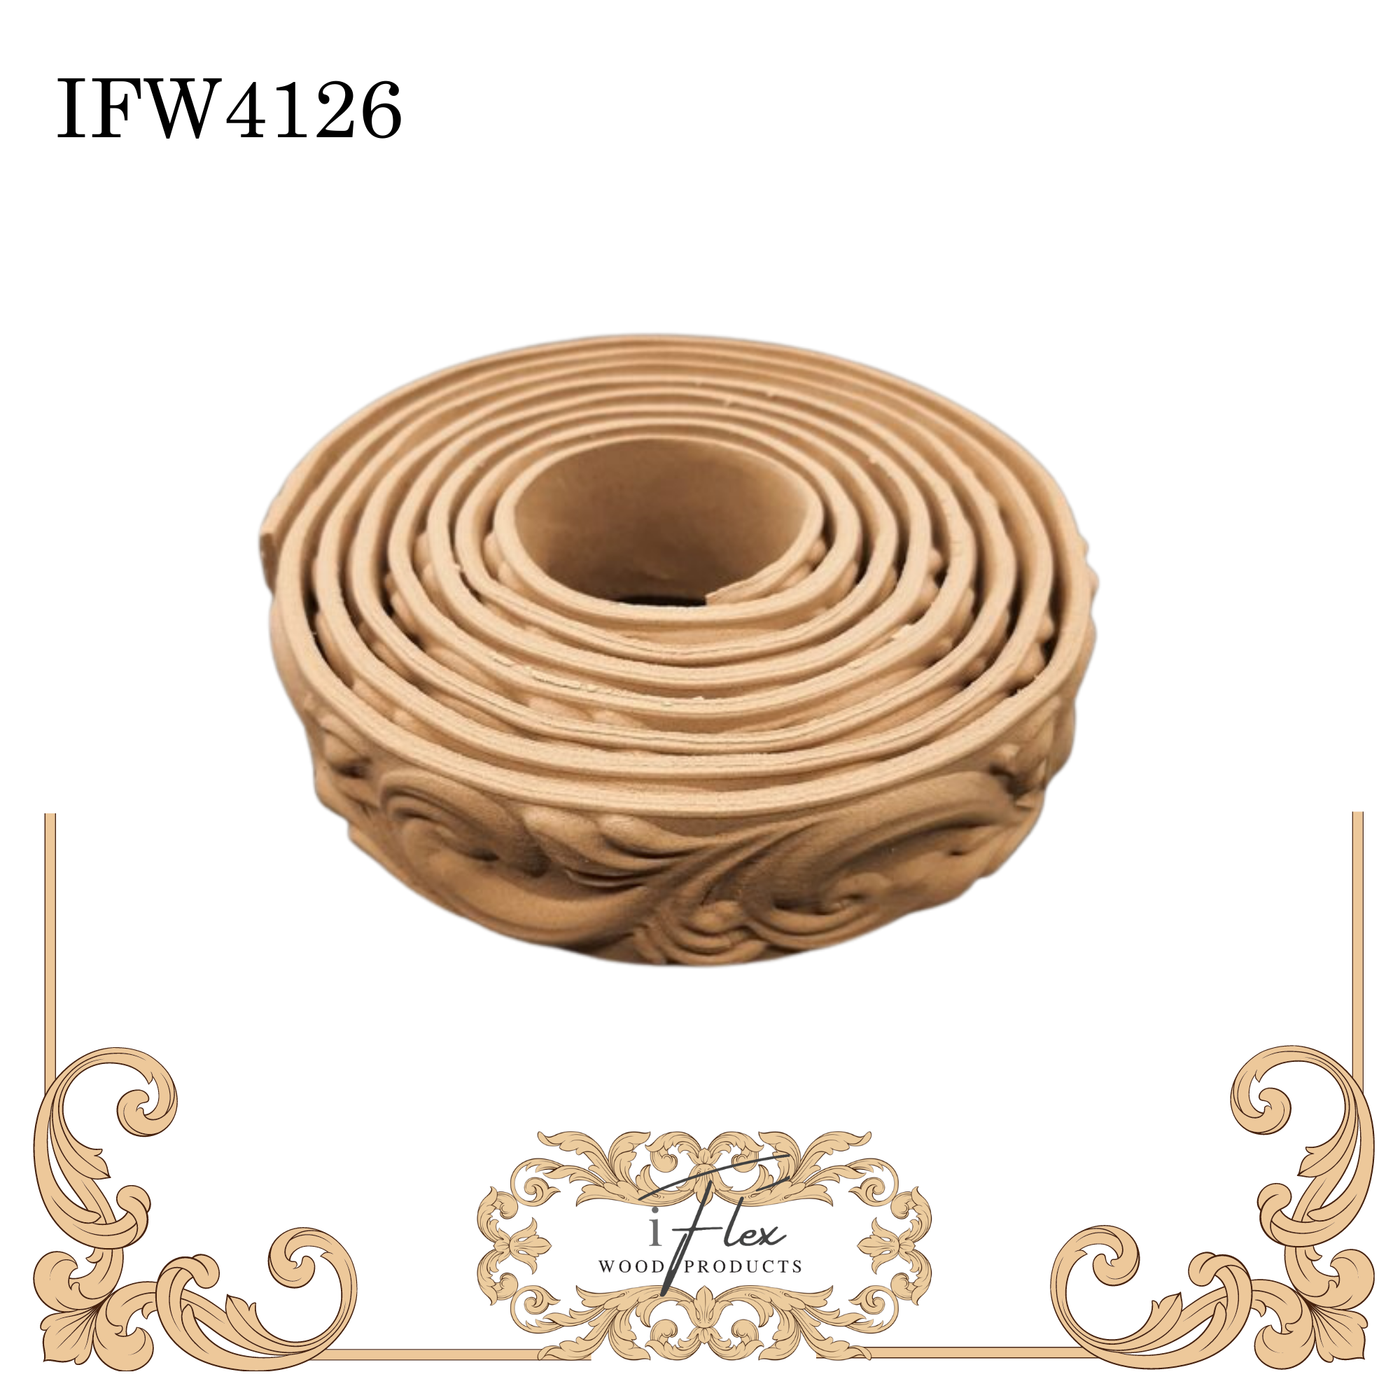 IFW 4126